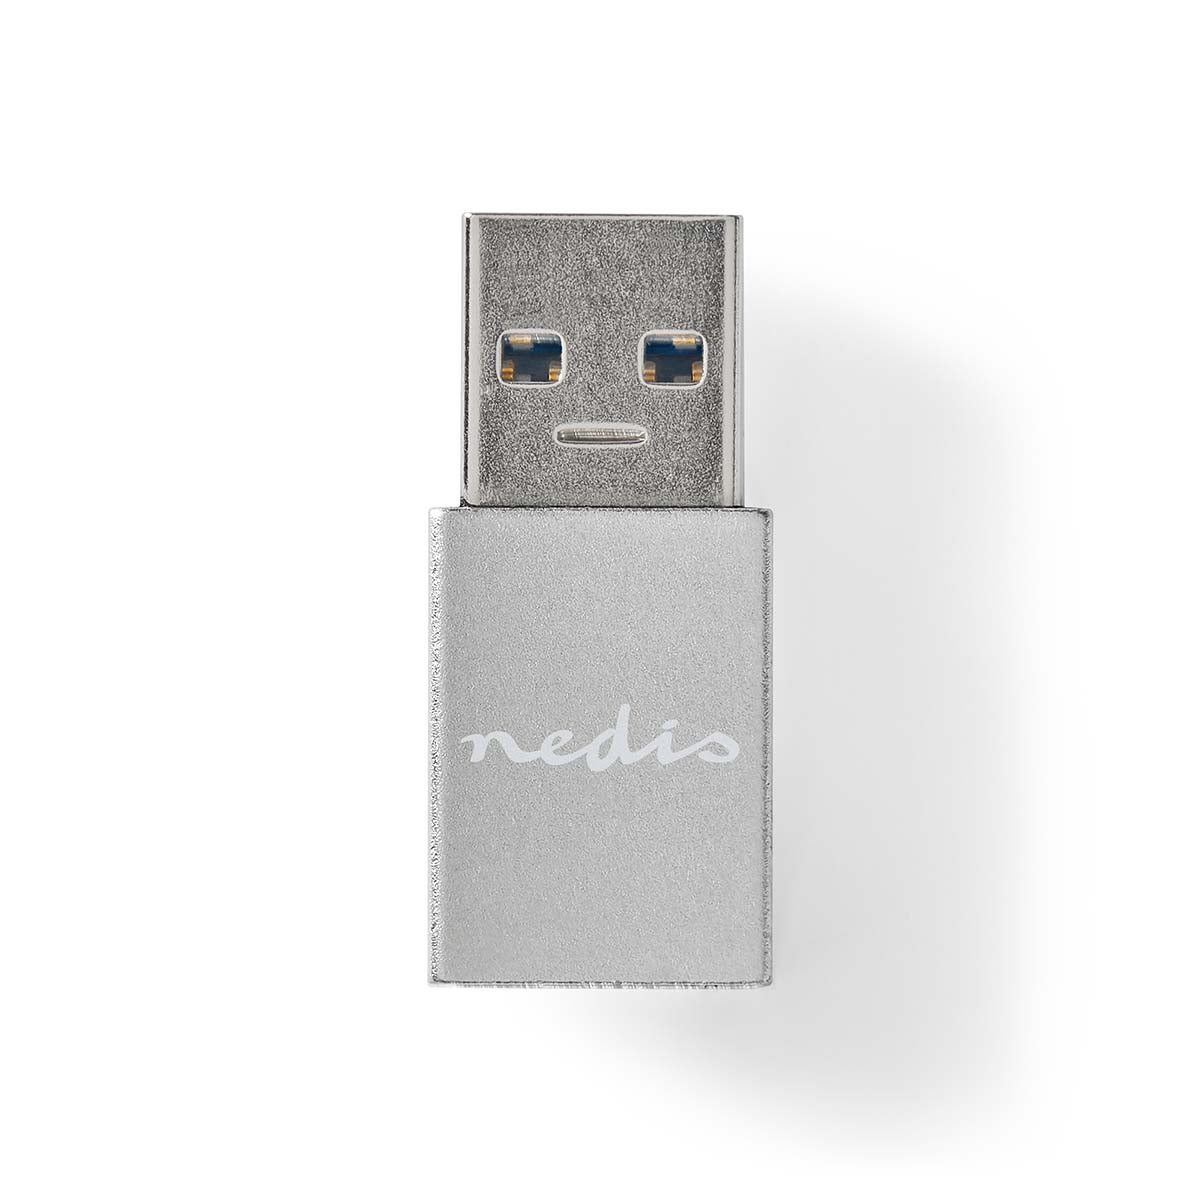 Adaptateur USB A 3.2 Gen1 mâle vers USB-C femelle, noir